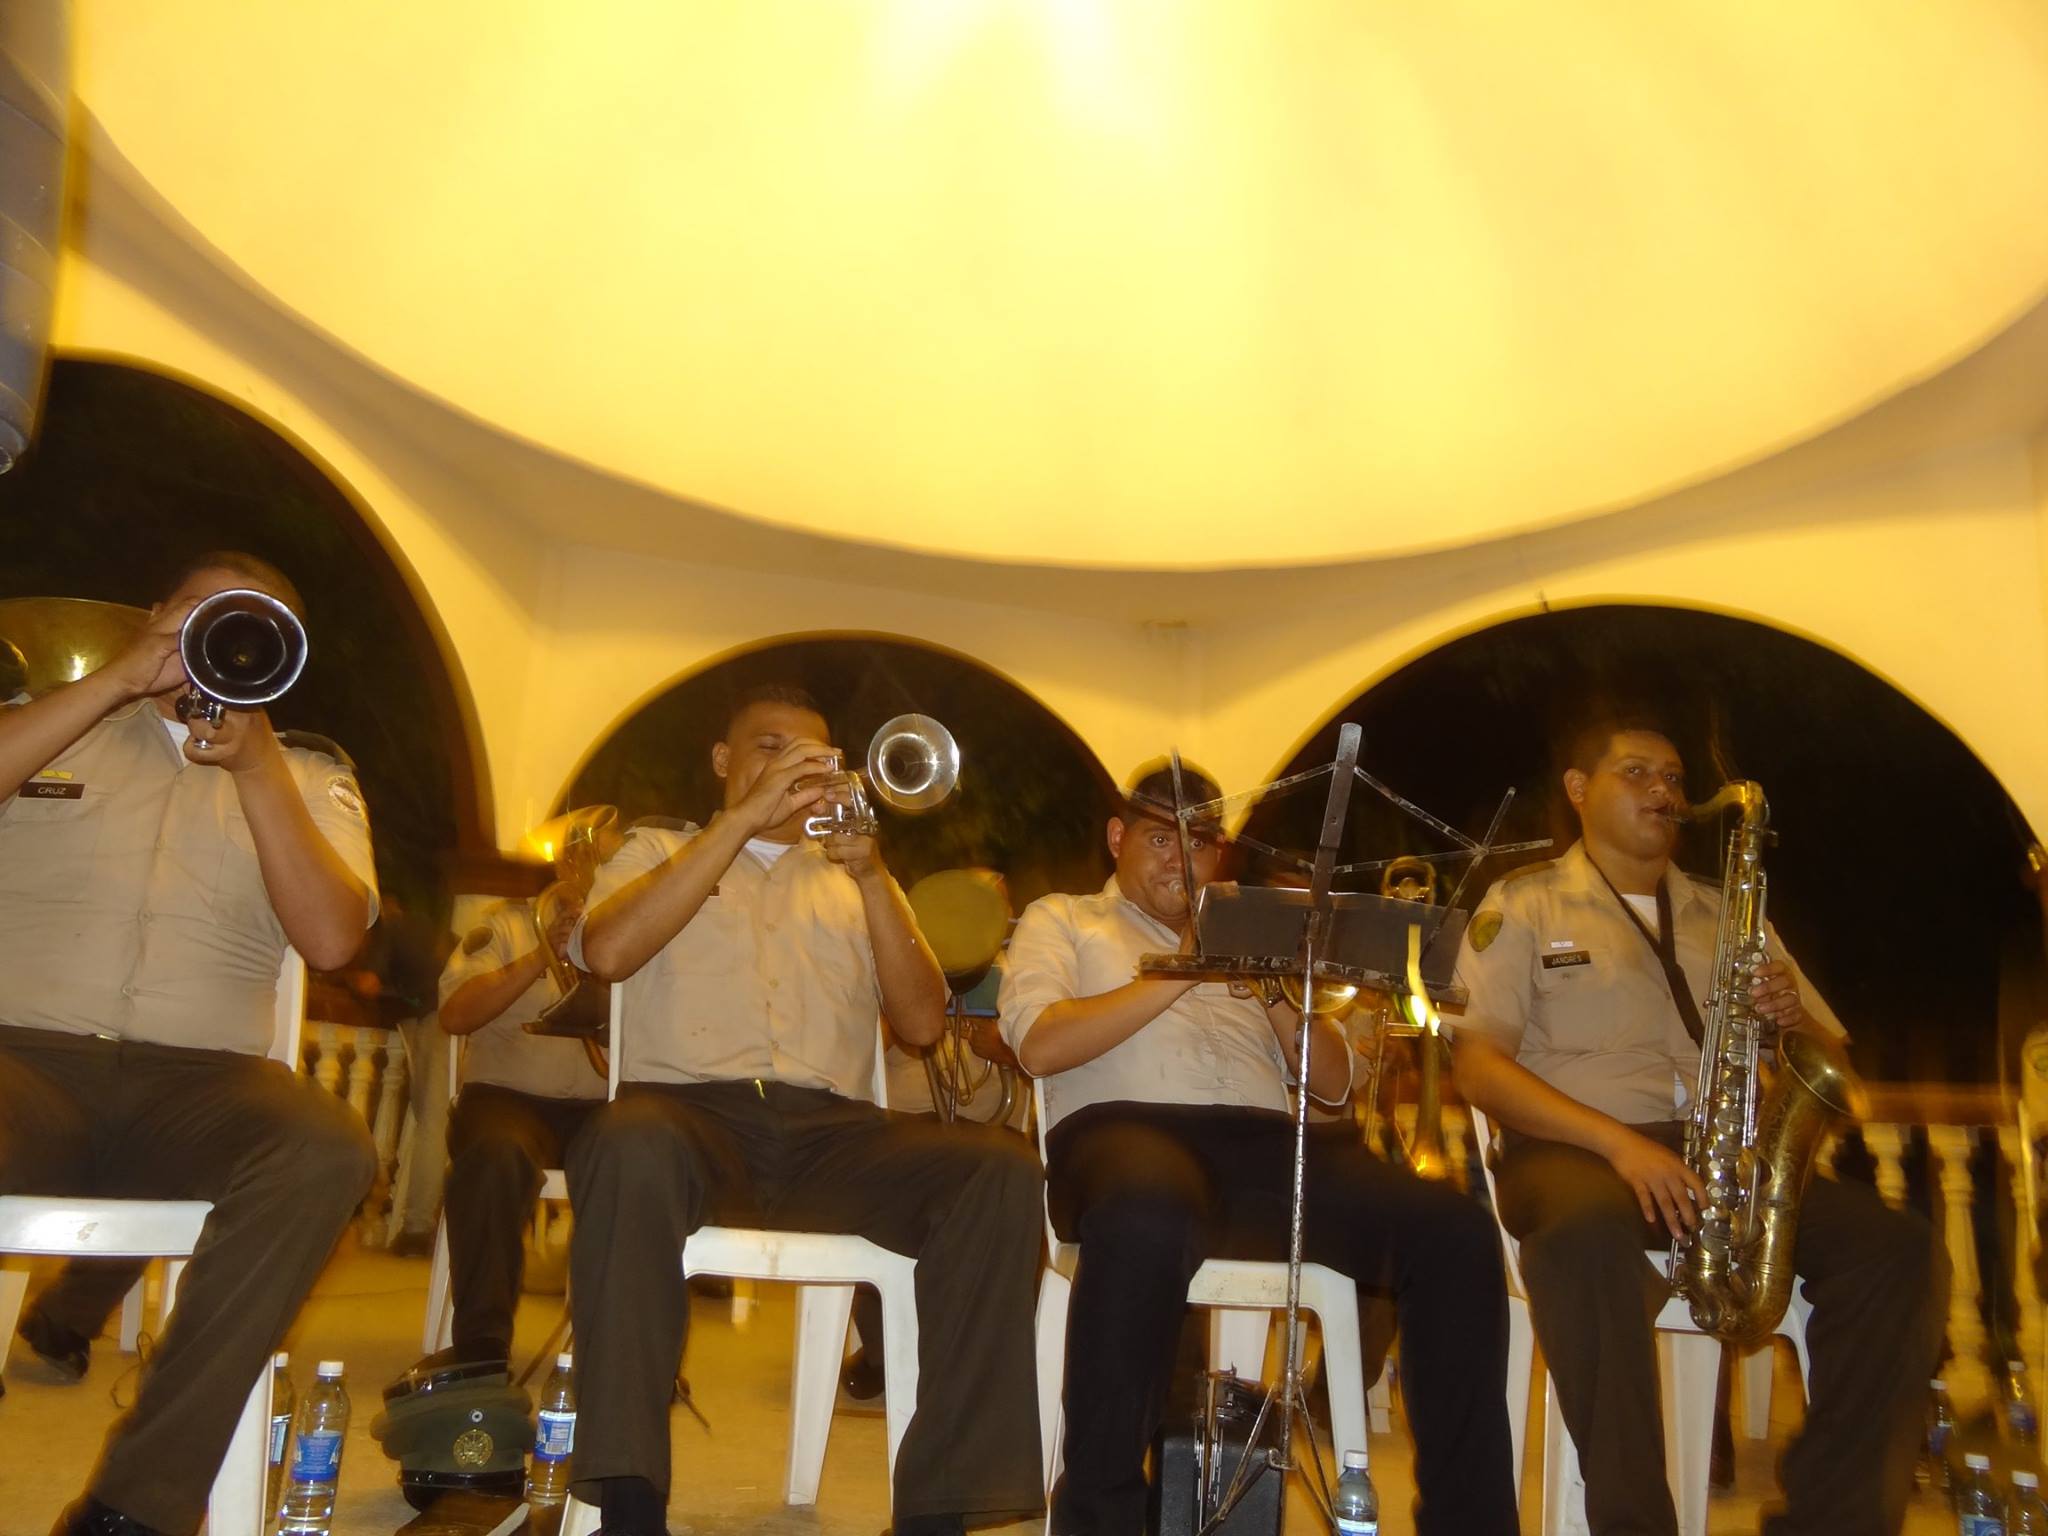 Noche de Jueves Culturales en Parque Raúl Francisco Munguía